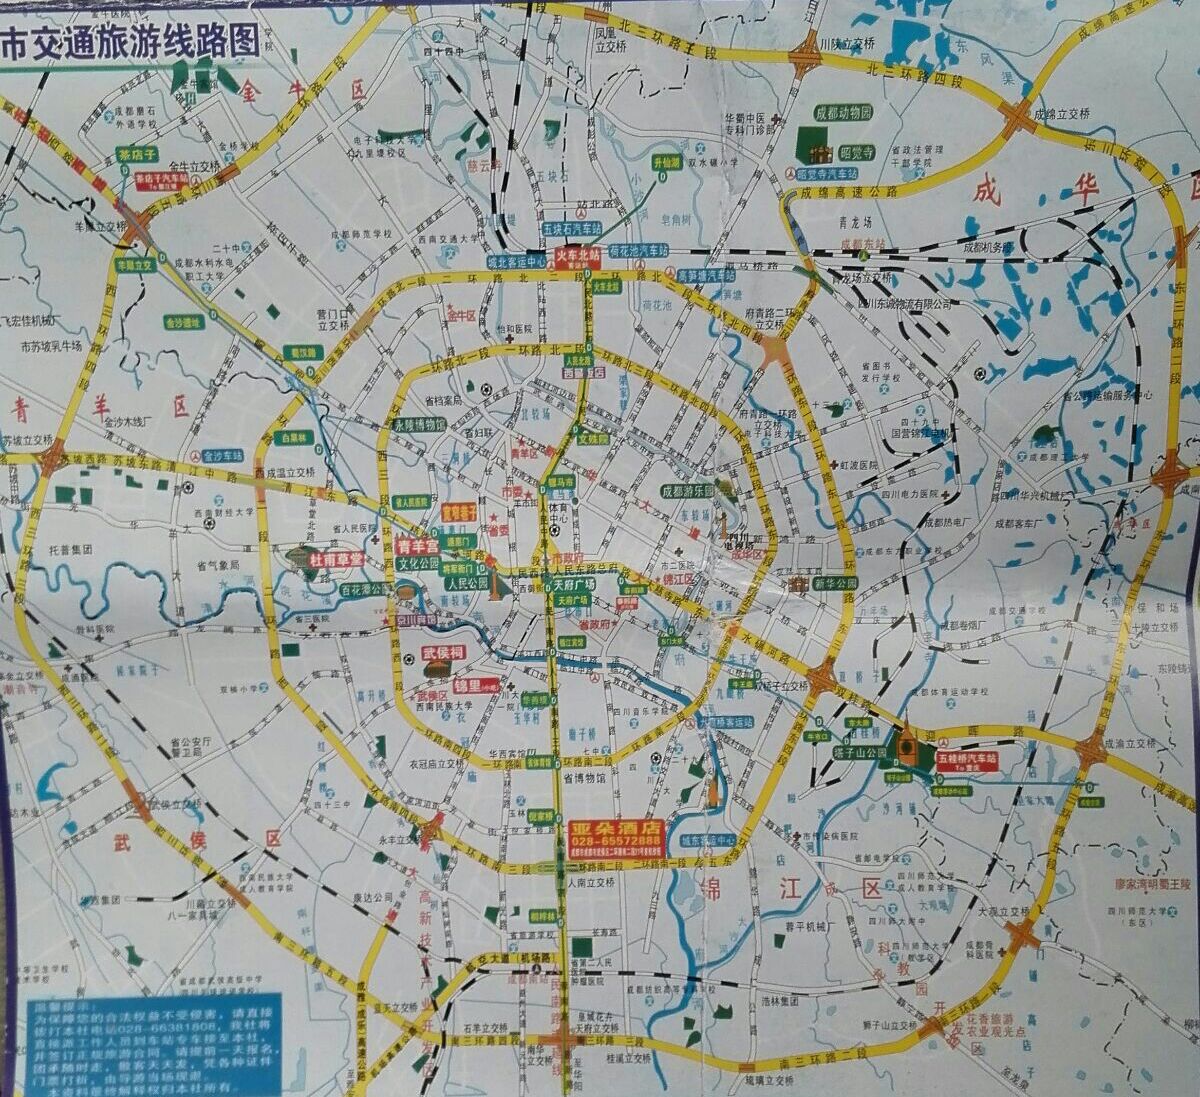 成都街景地图图片